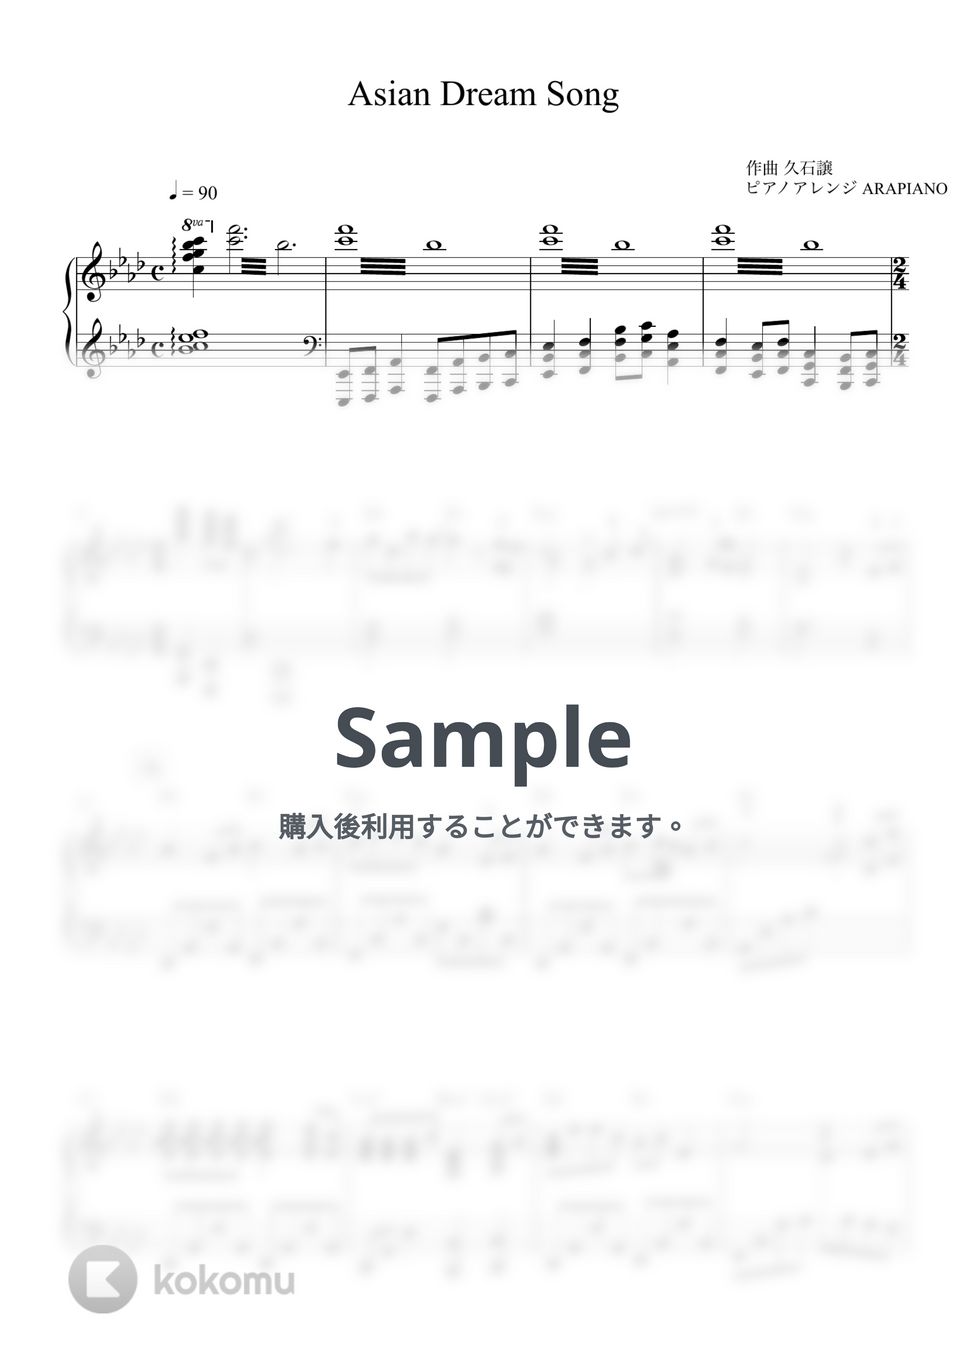 久石譲 - Asian Dream Song by ARAPIANO